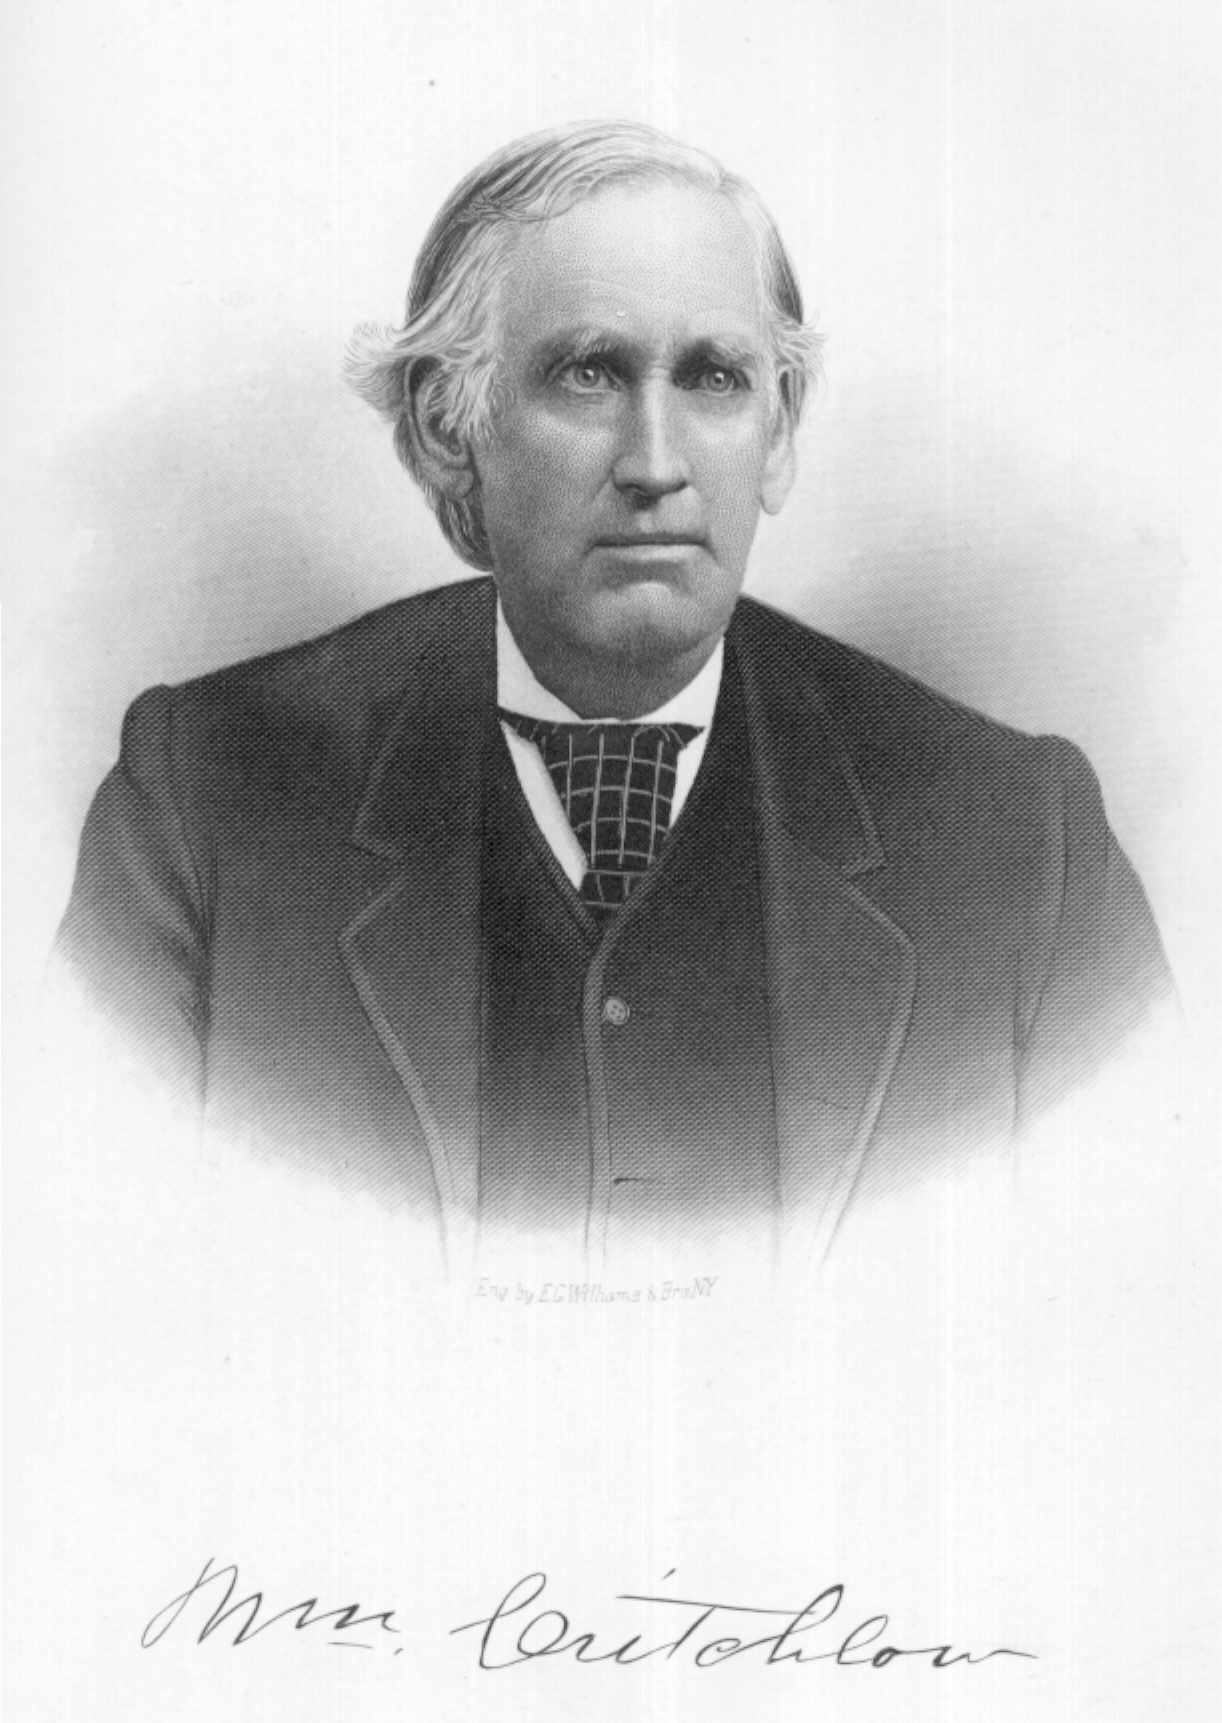 William Coe Critchlow 1839-1906